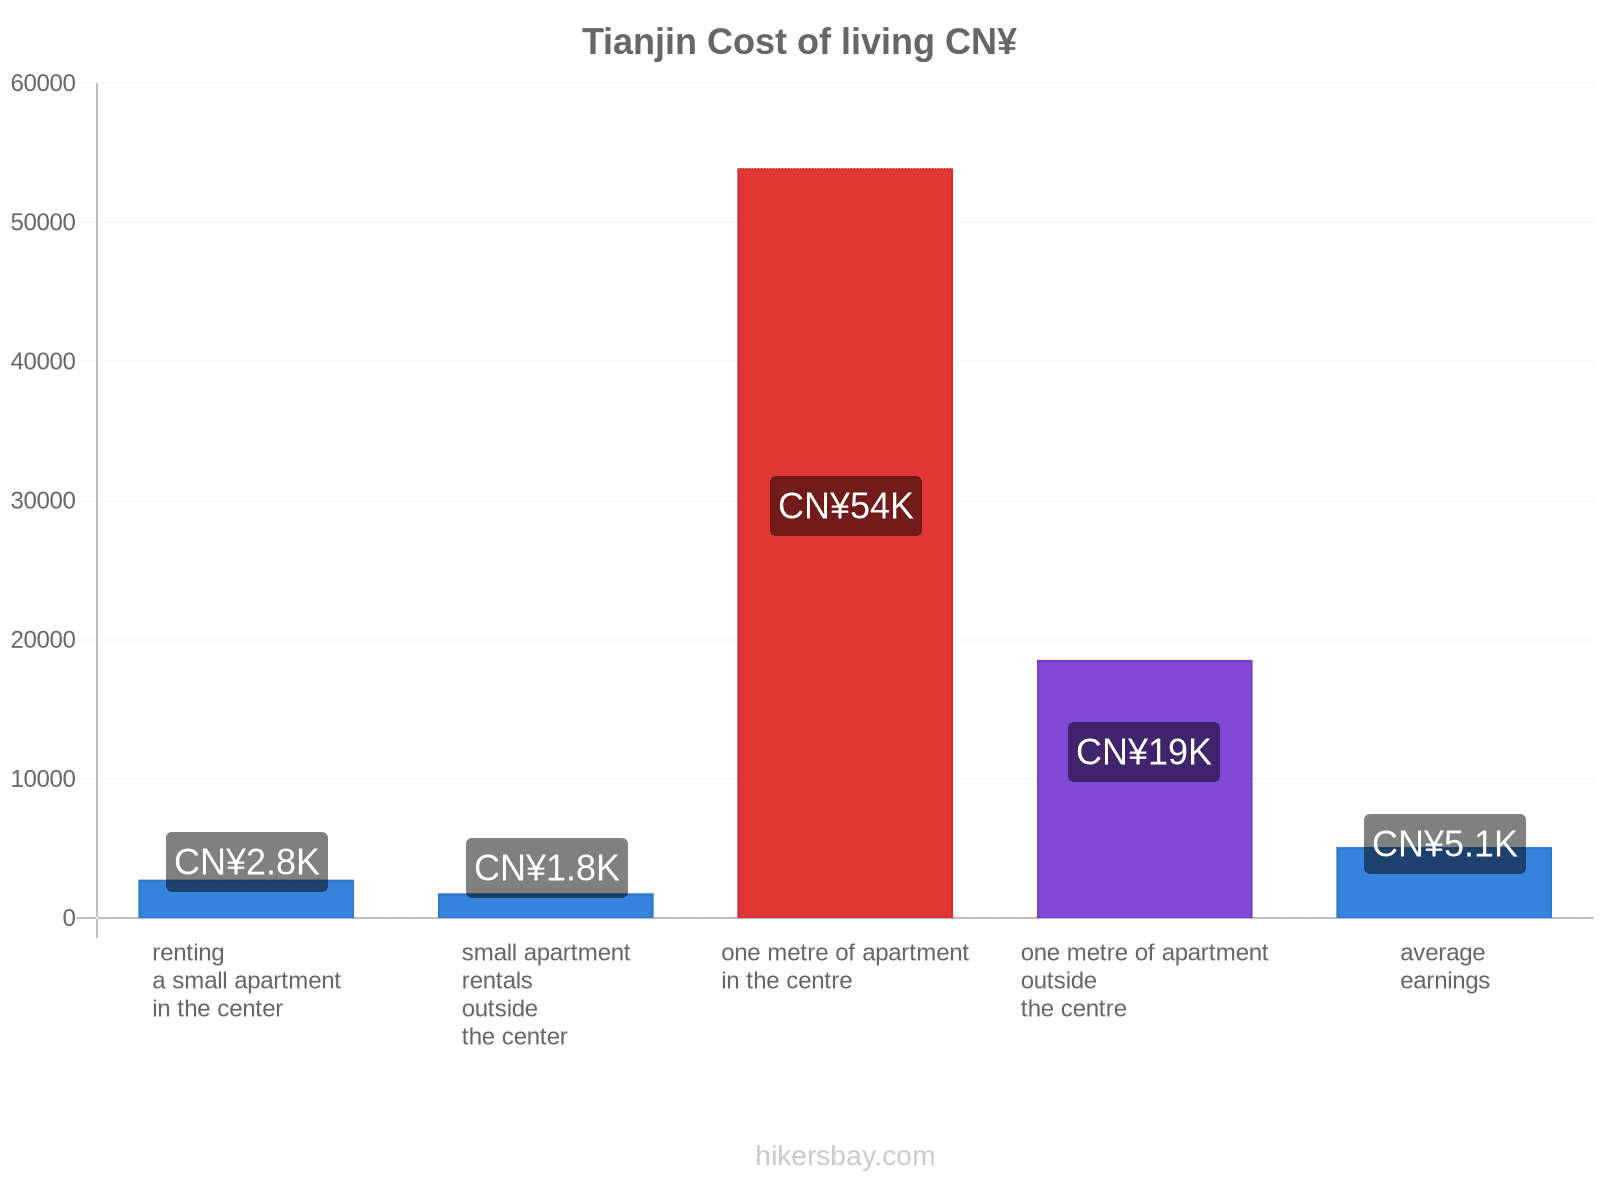 Tianjin cost of living hikersbay.com